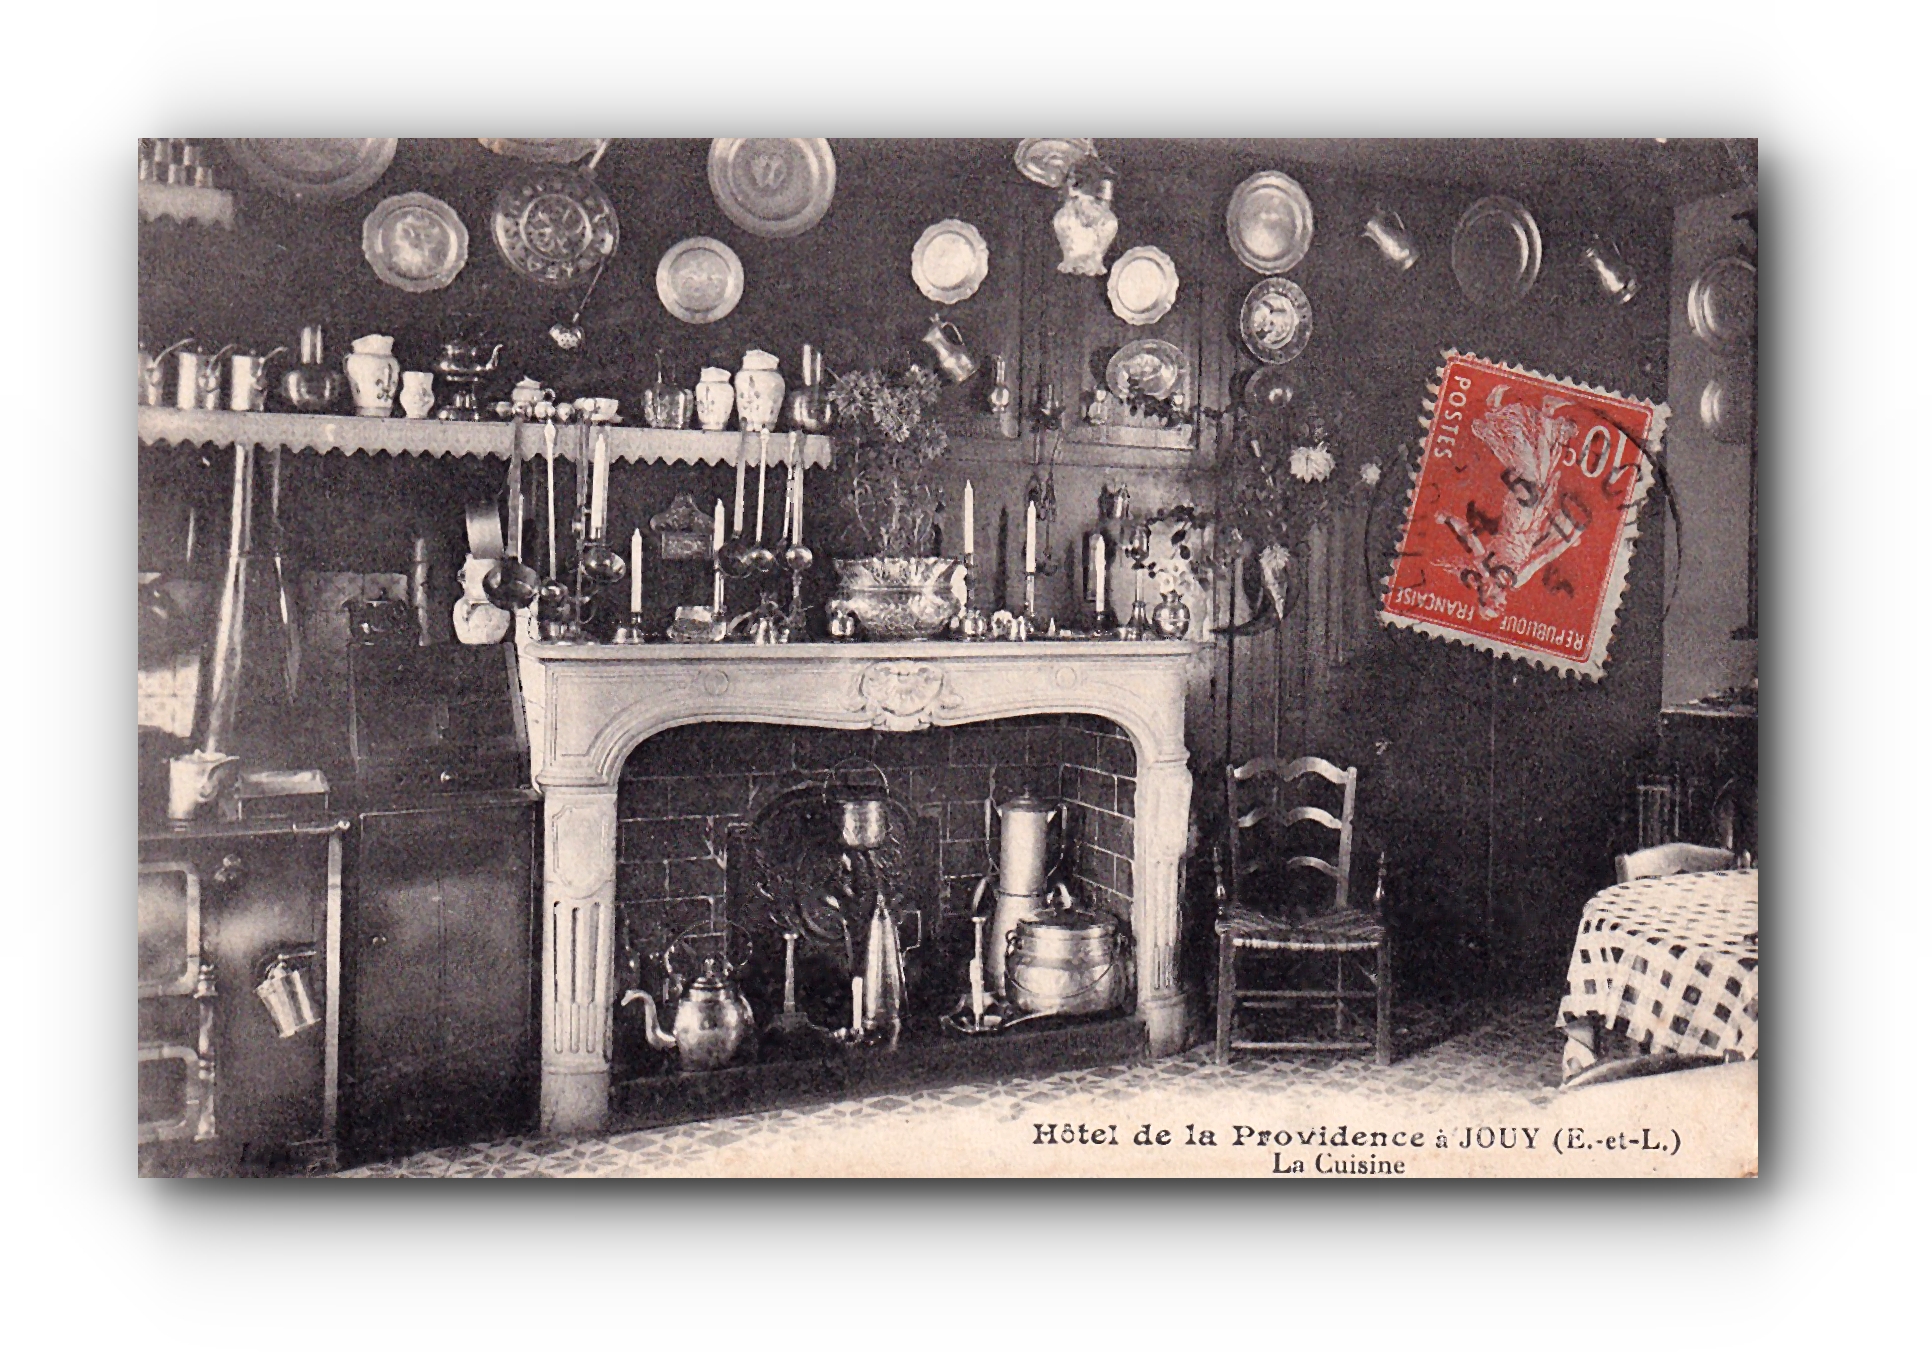 - La Cuisine - Hôtel de la Providence - JOUY -26.10.1915 -